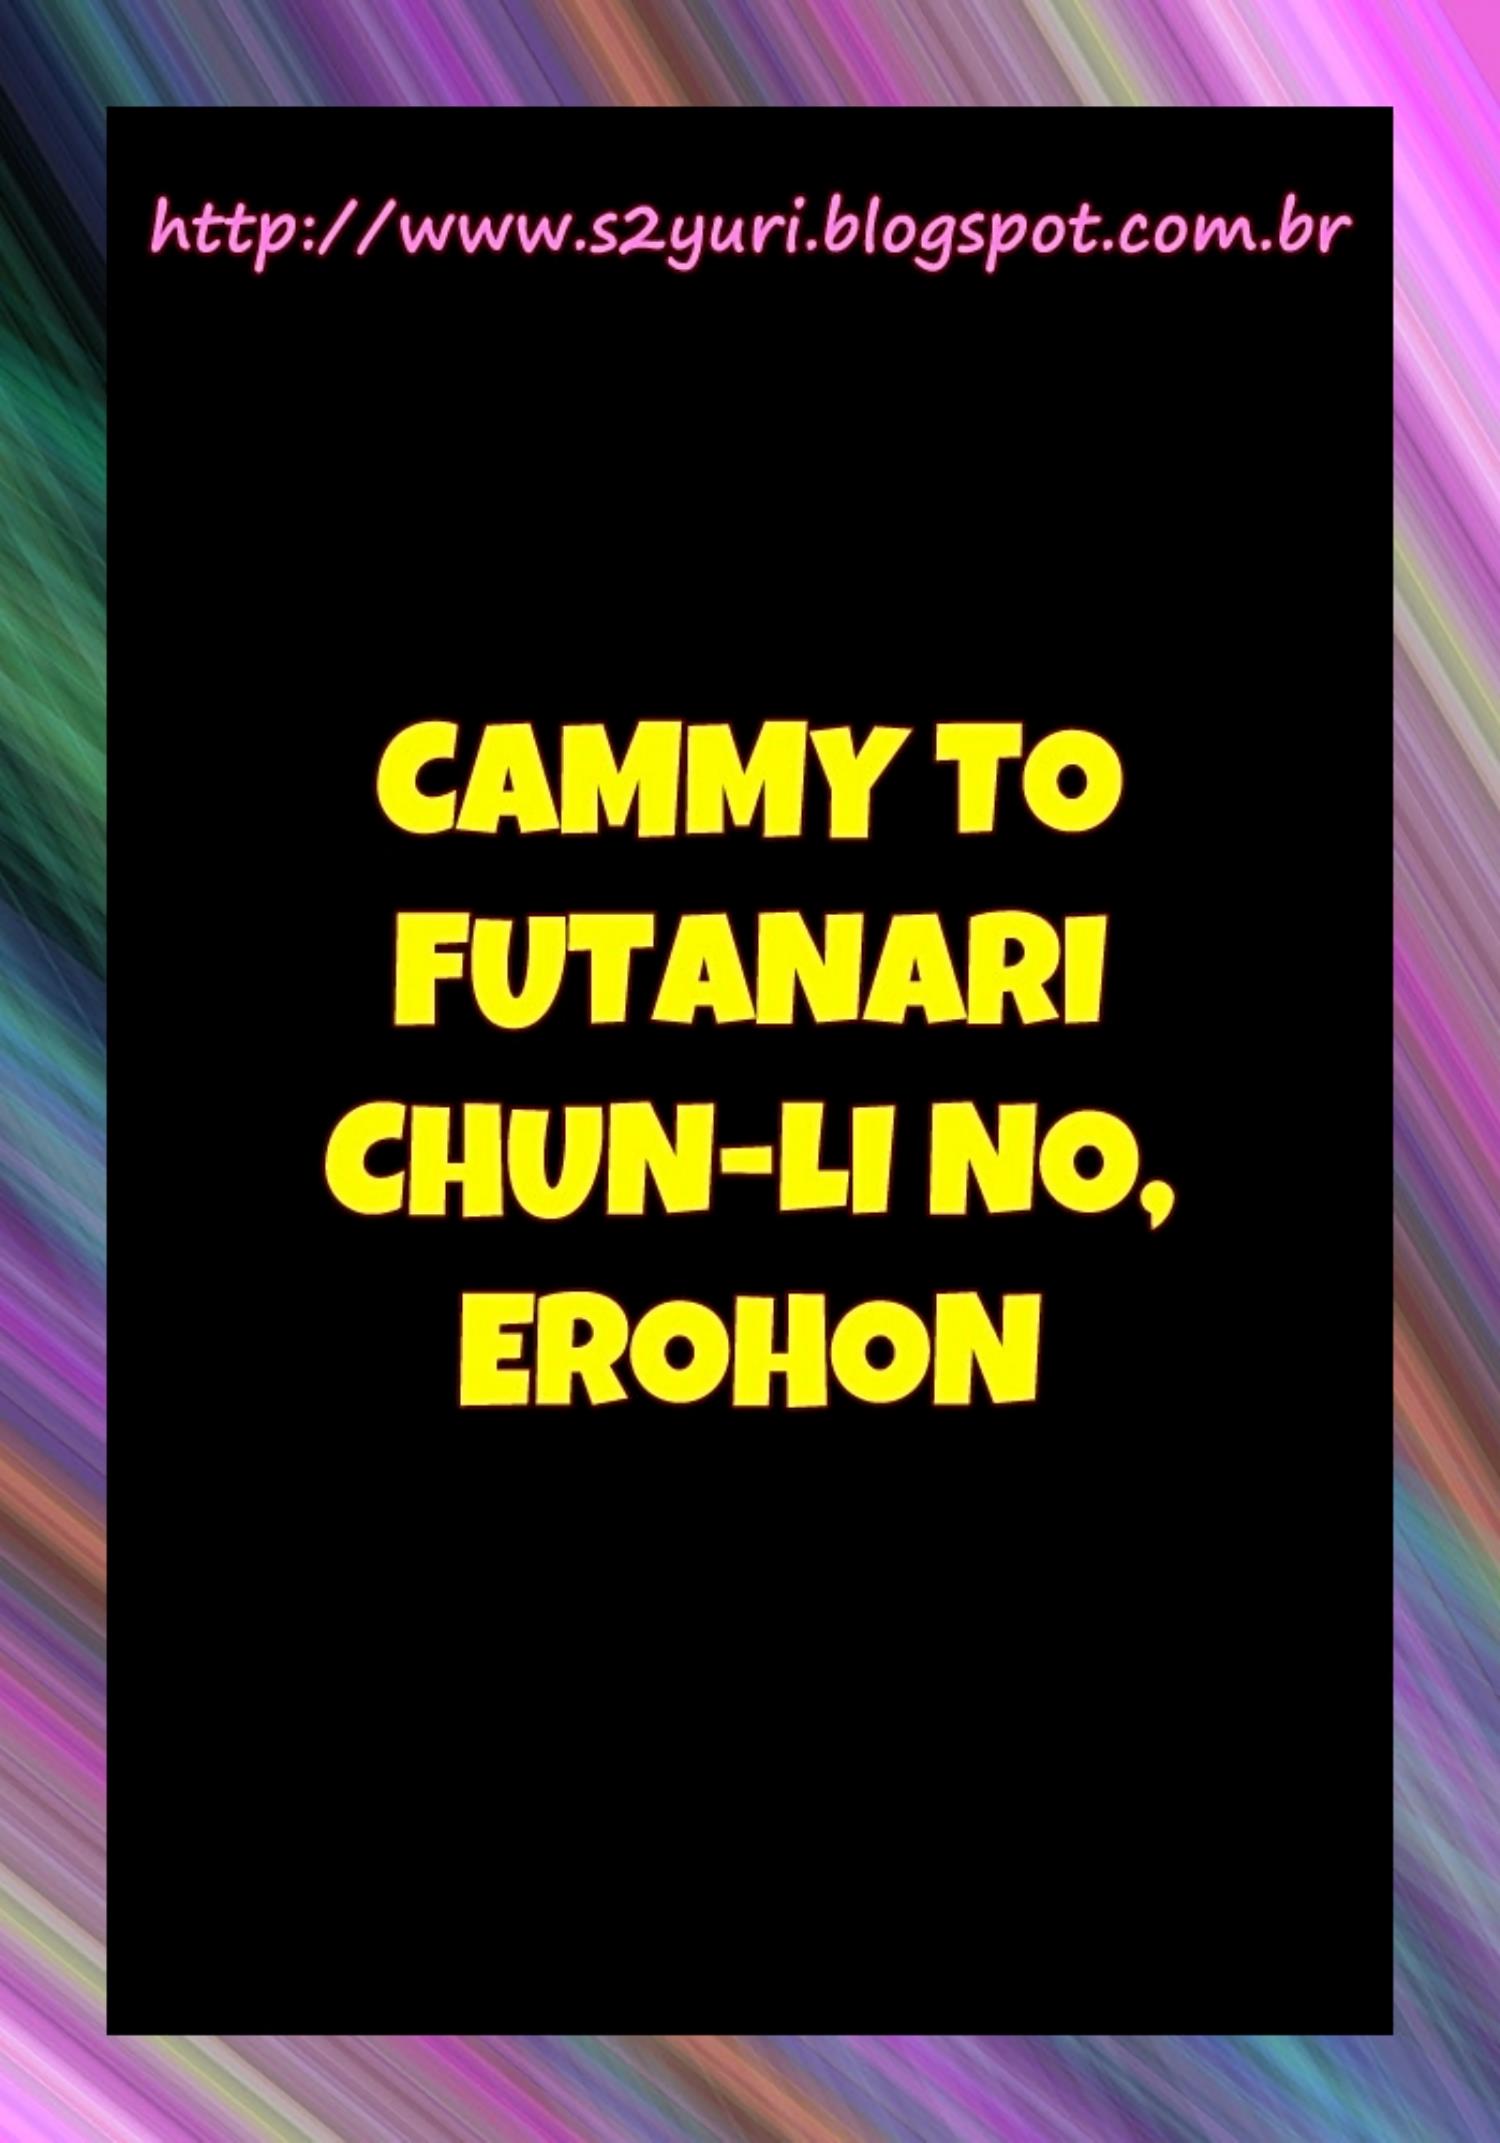 Cammy to Futanari Chun-Li no, Erohon.